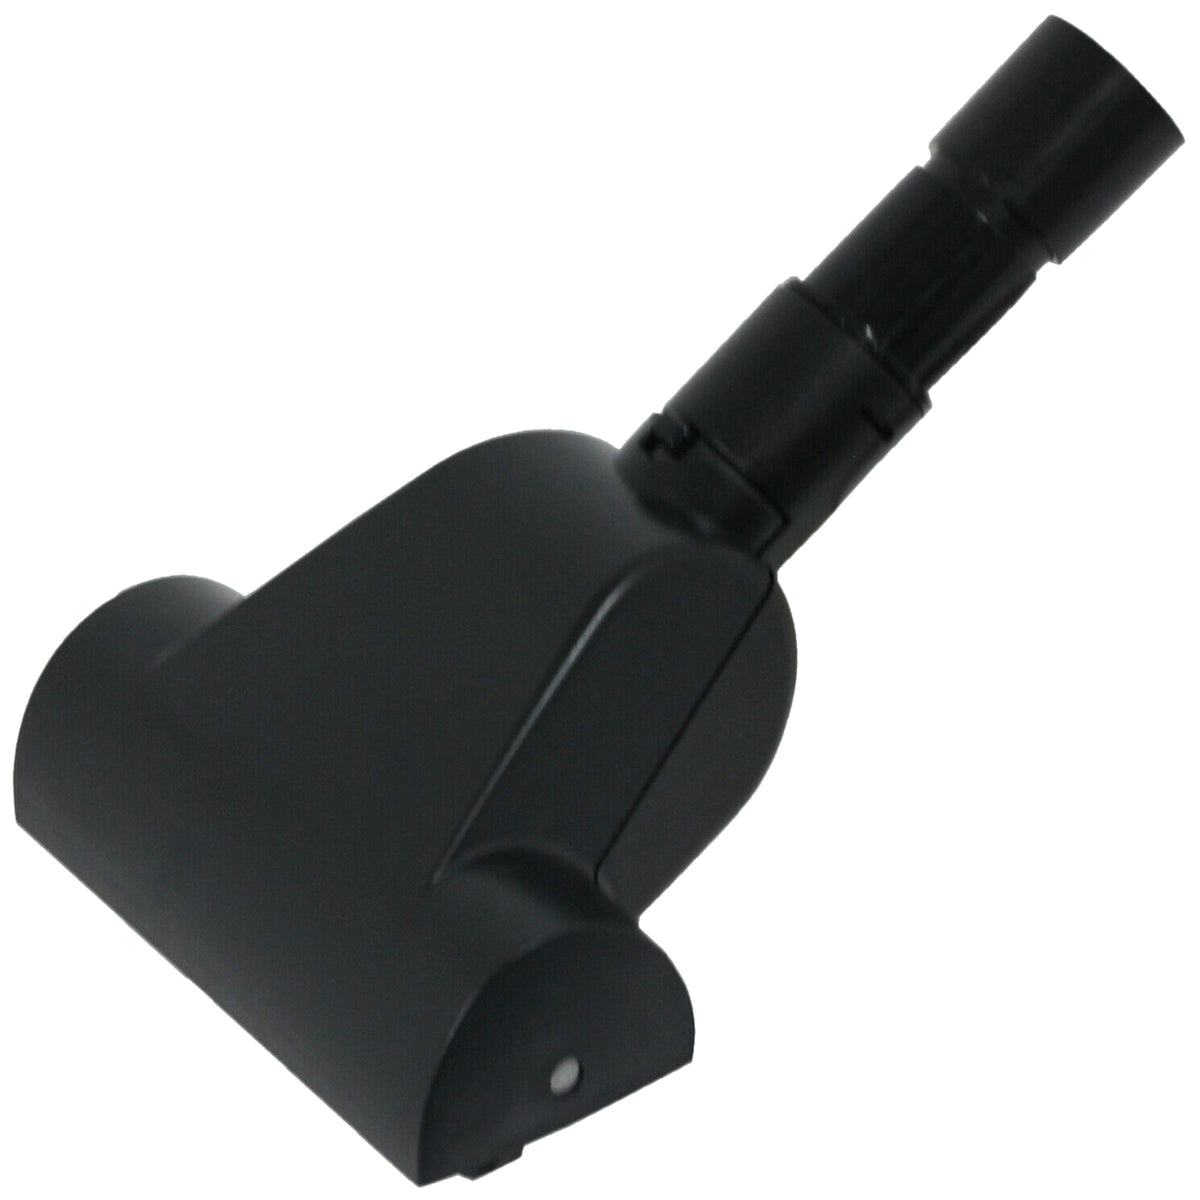 Kärcher 2.863-090.0 Mini Turbo Brush Vacuum Cleaner Accessory, Plastic